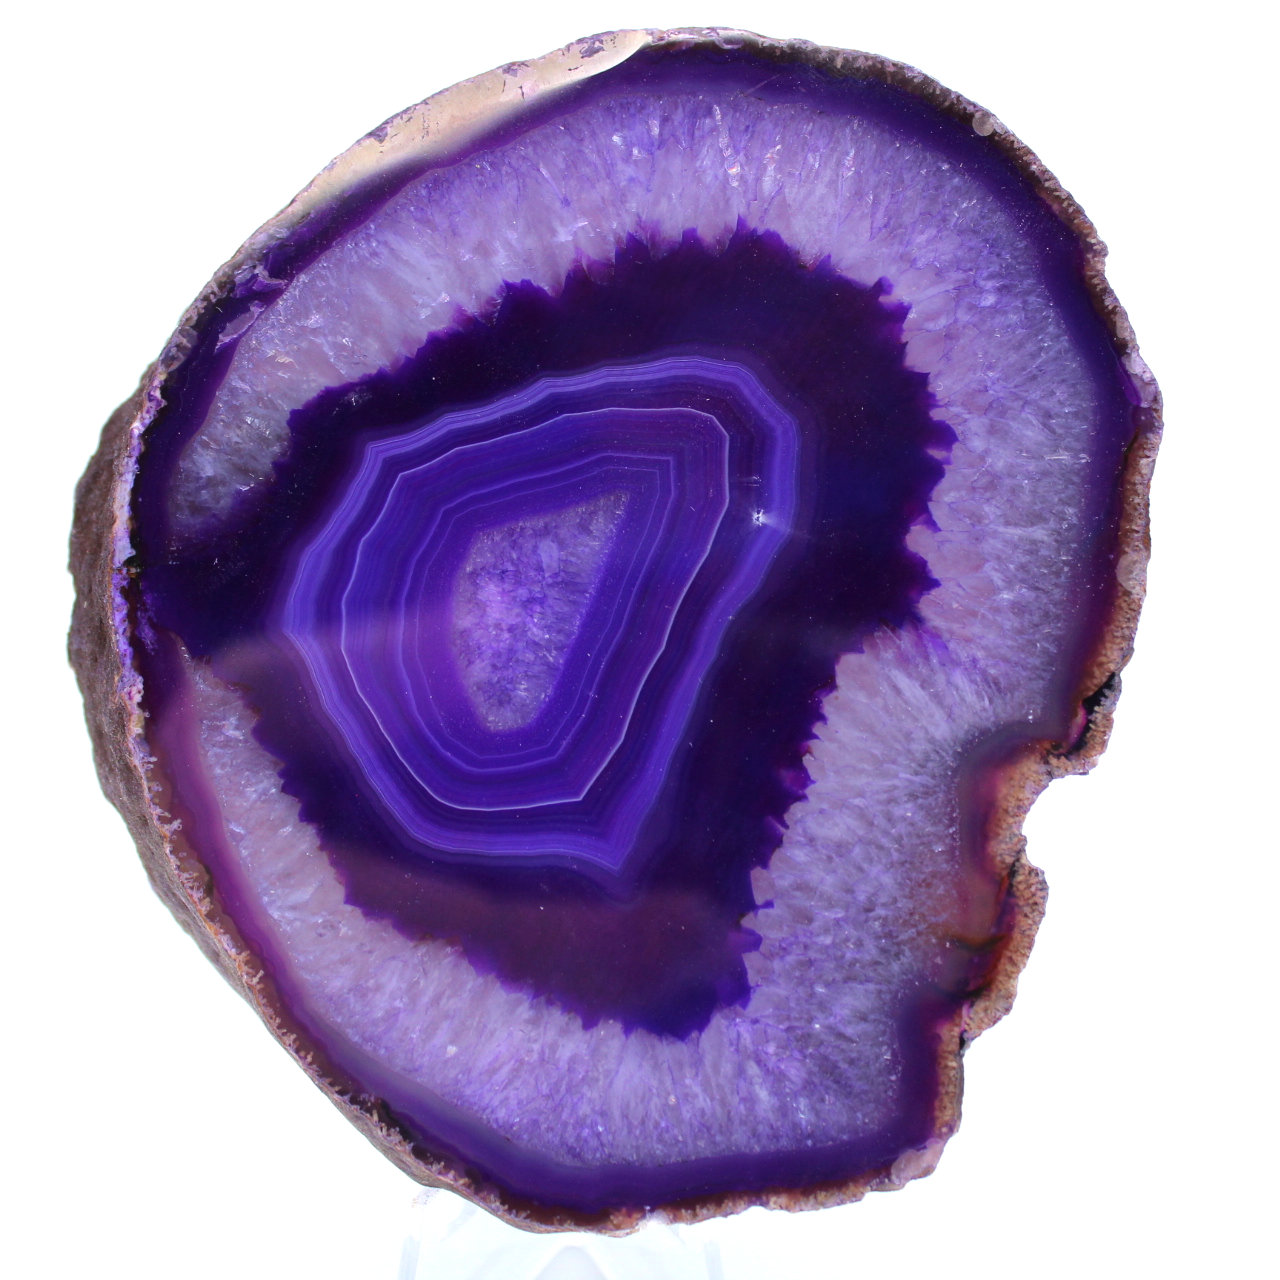 Tranche d'agate violette d'ornement